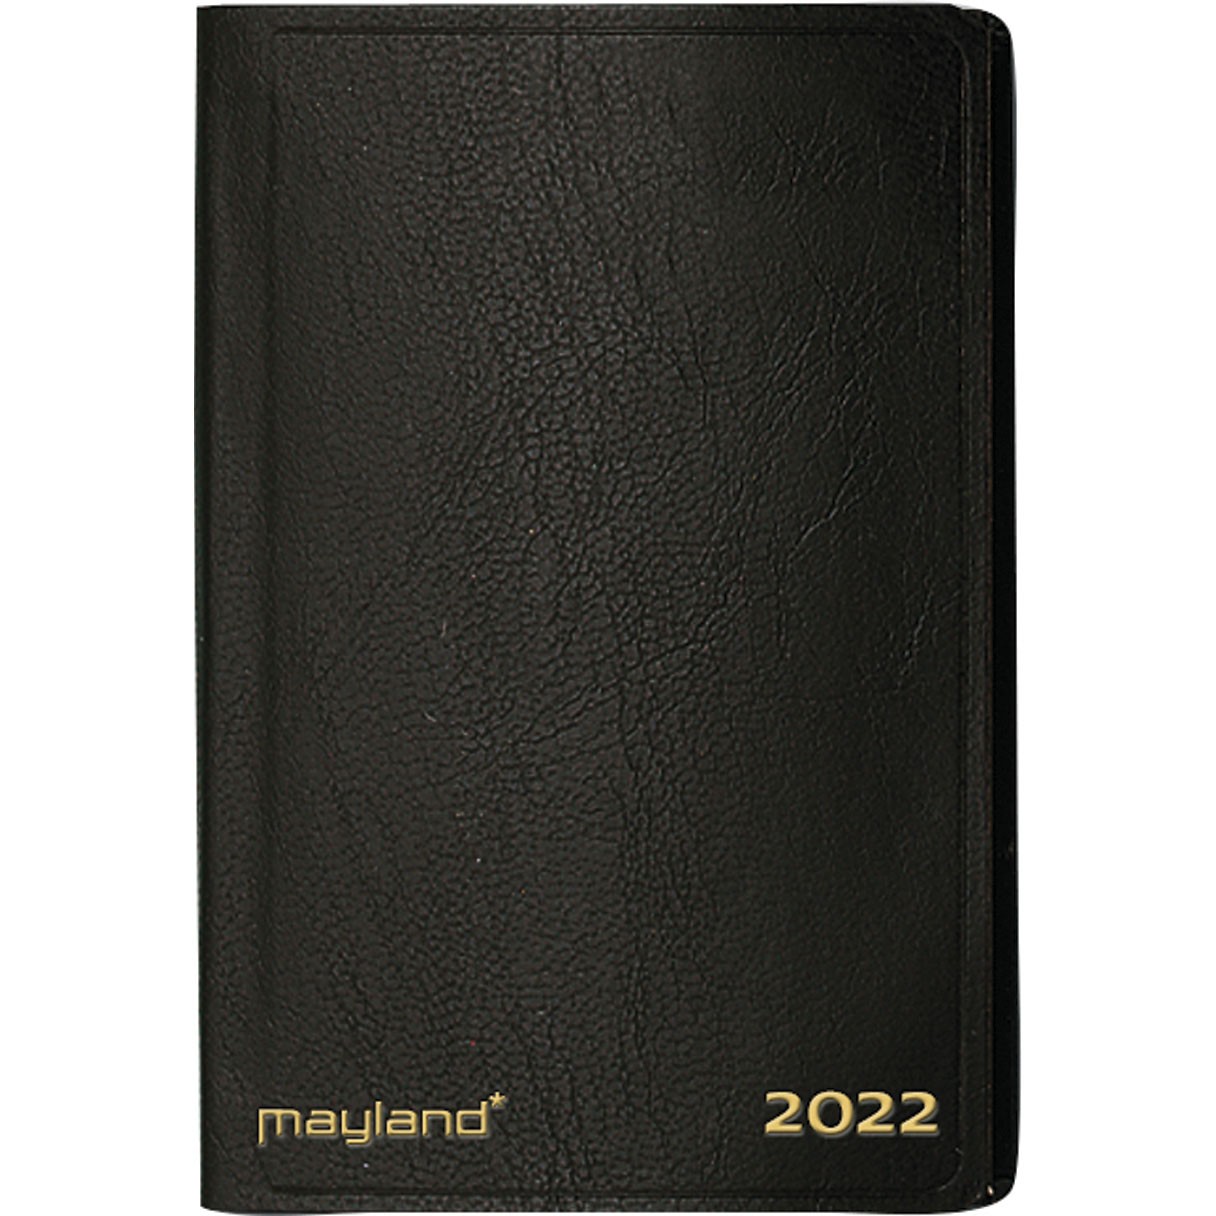 Mayland lommeugekalender tværformat 12x7,5 cm sort 22162010